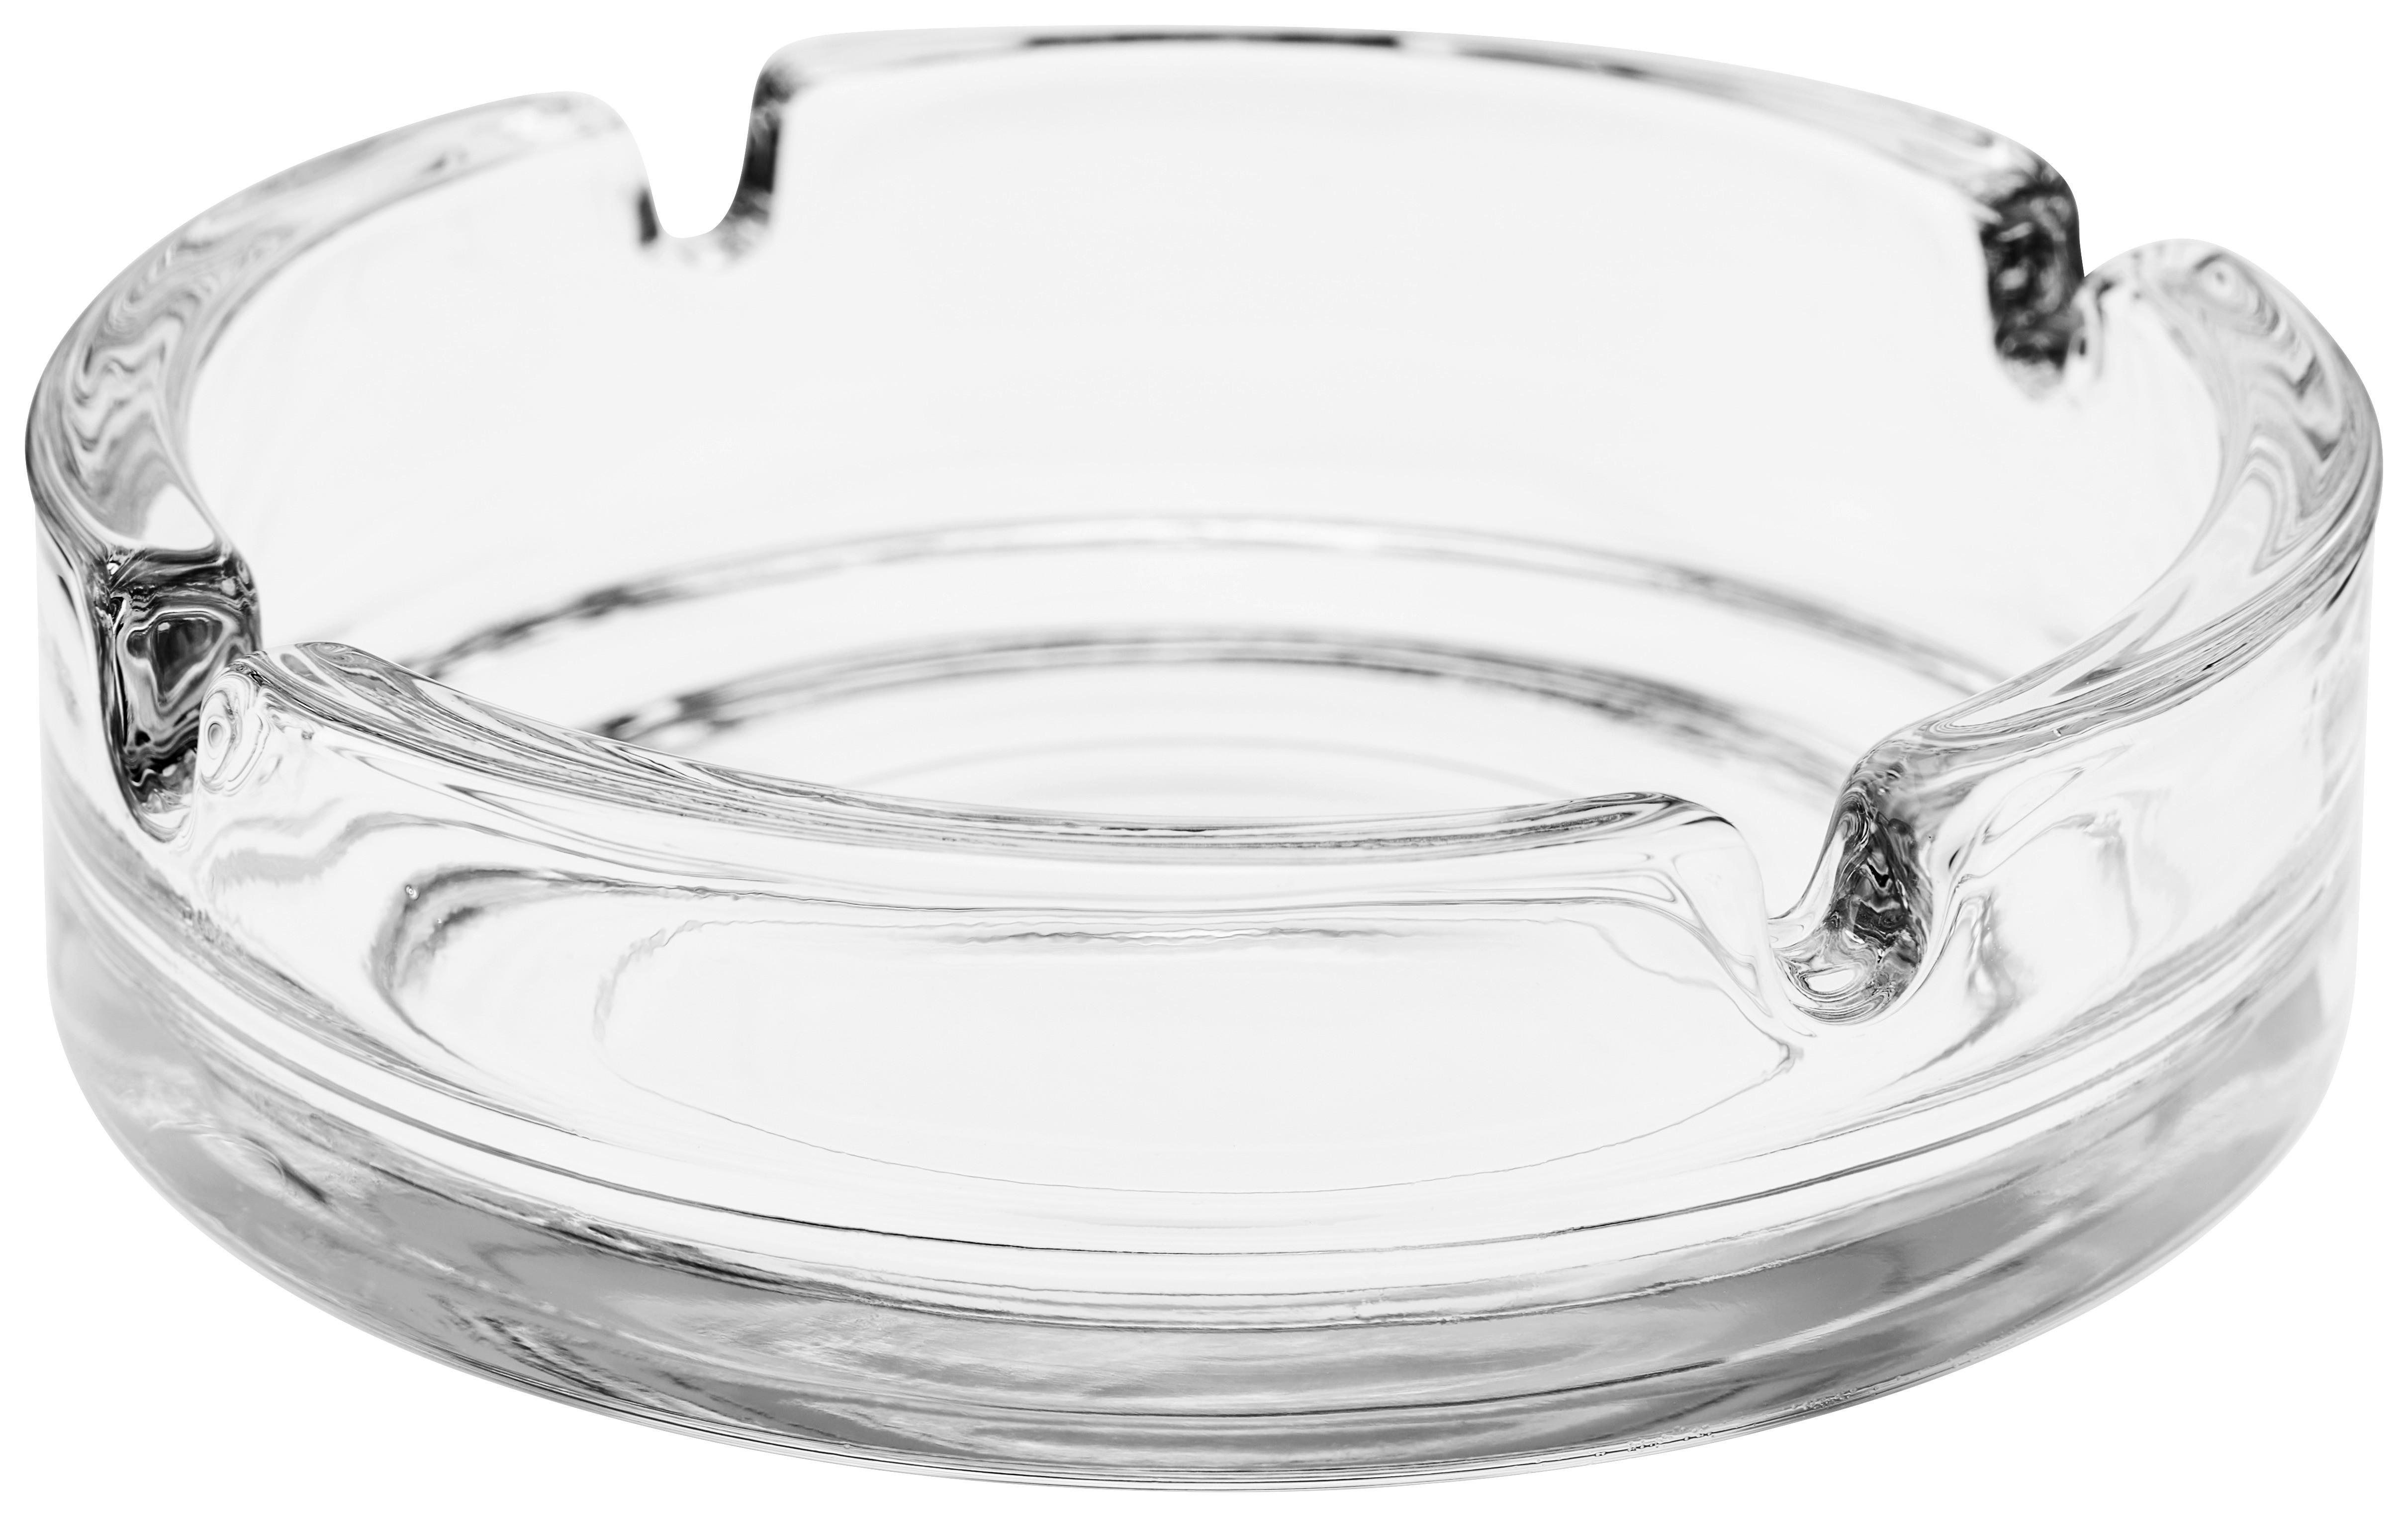 Glas-Aschenbecher Ø 7,3 x 3,7 cm - Klar (stapelbar)